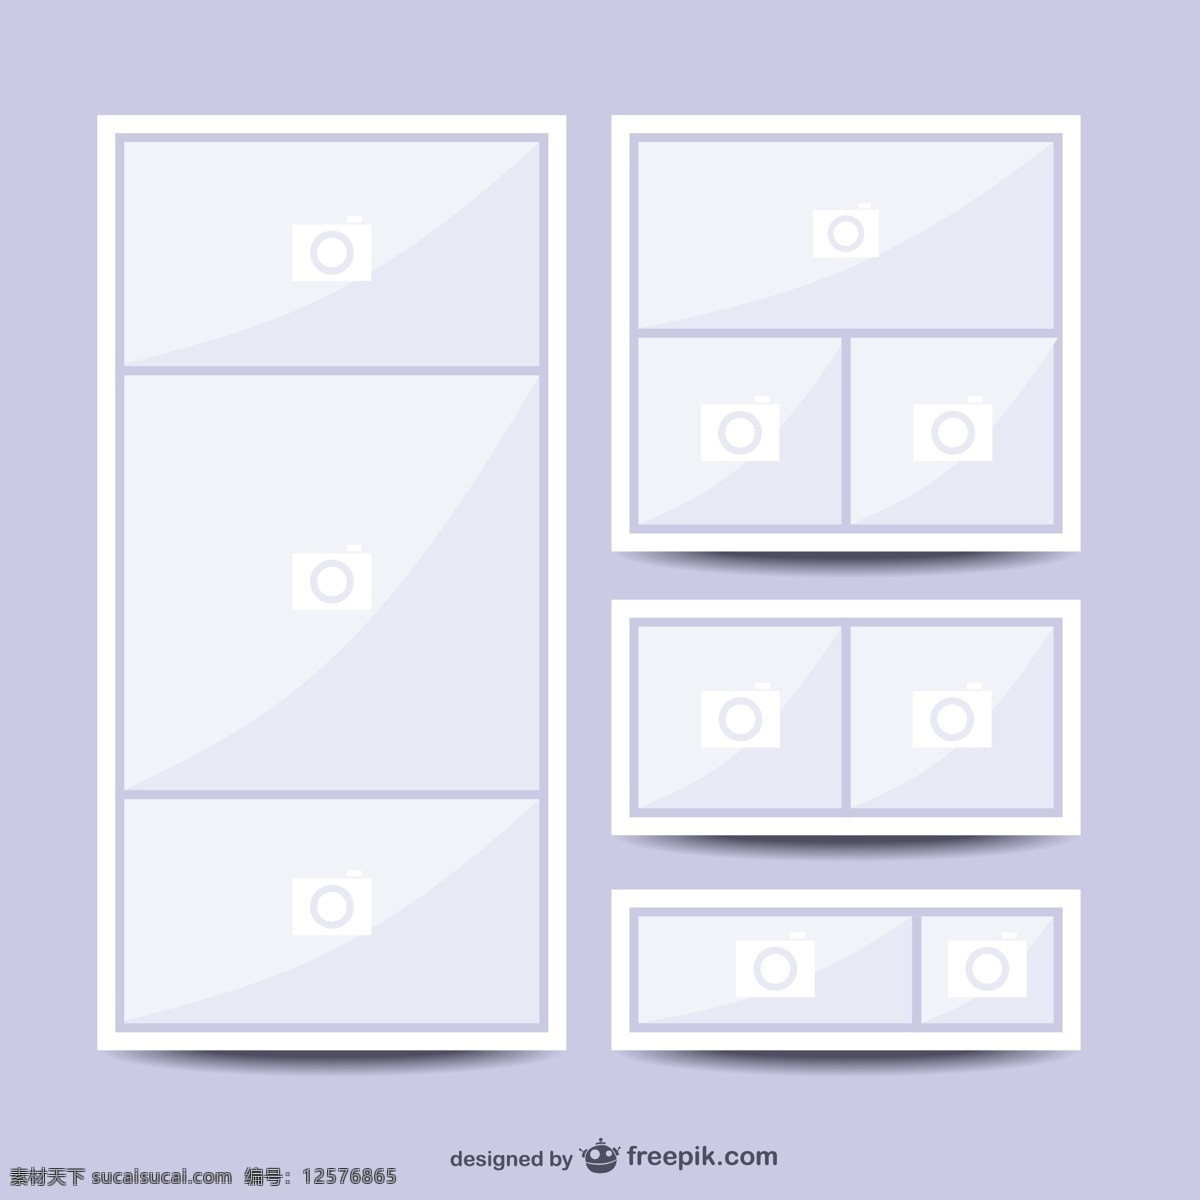 拼贴图片模板 框架 海报 拼贴 空间布局 相框 图片展览 图像编辑 空 展览 定义 模板 白色